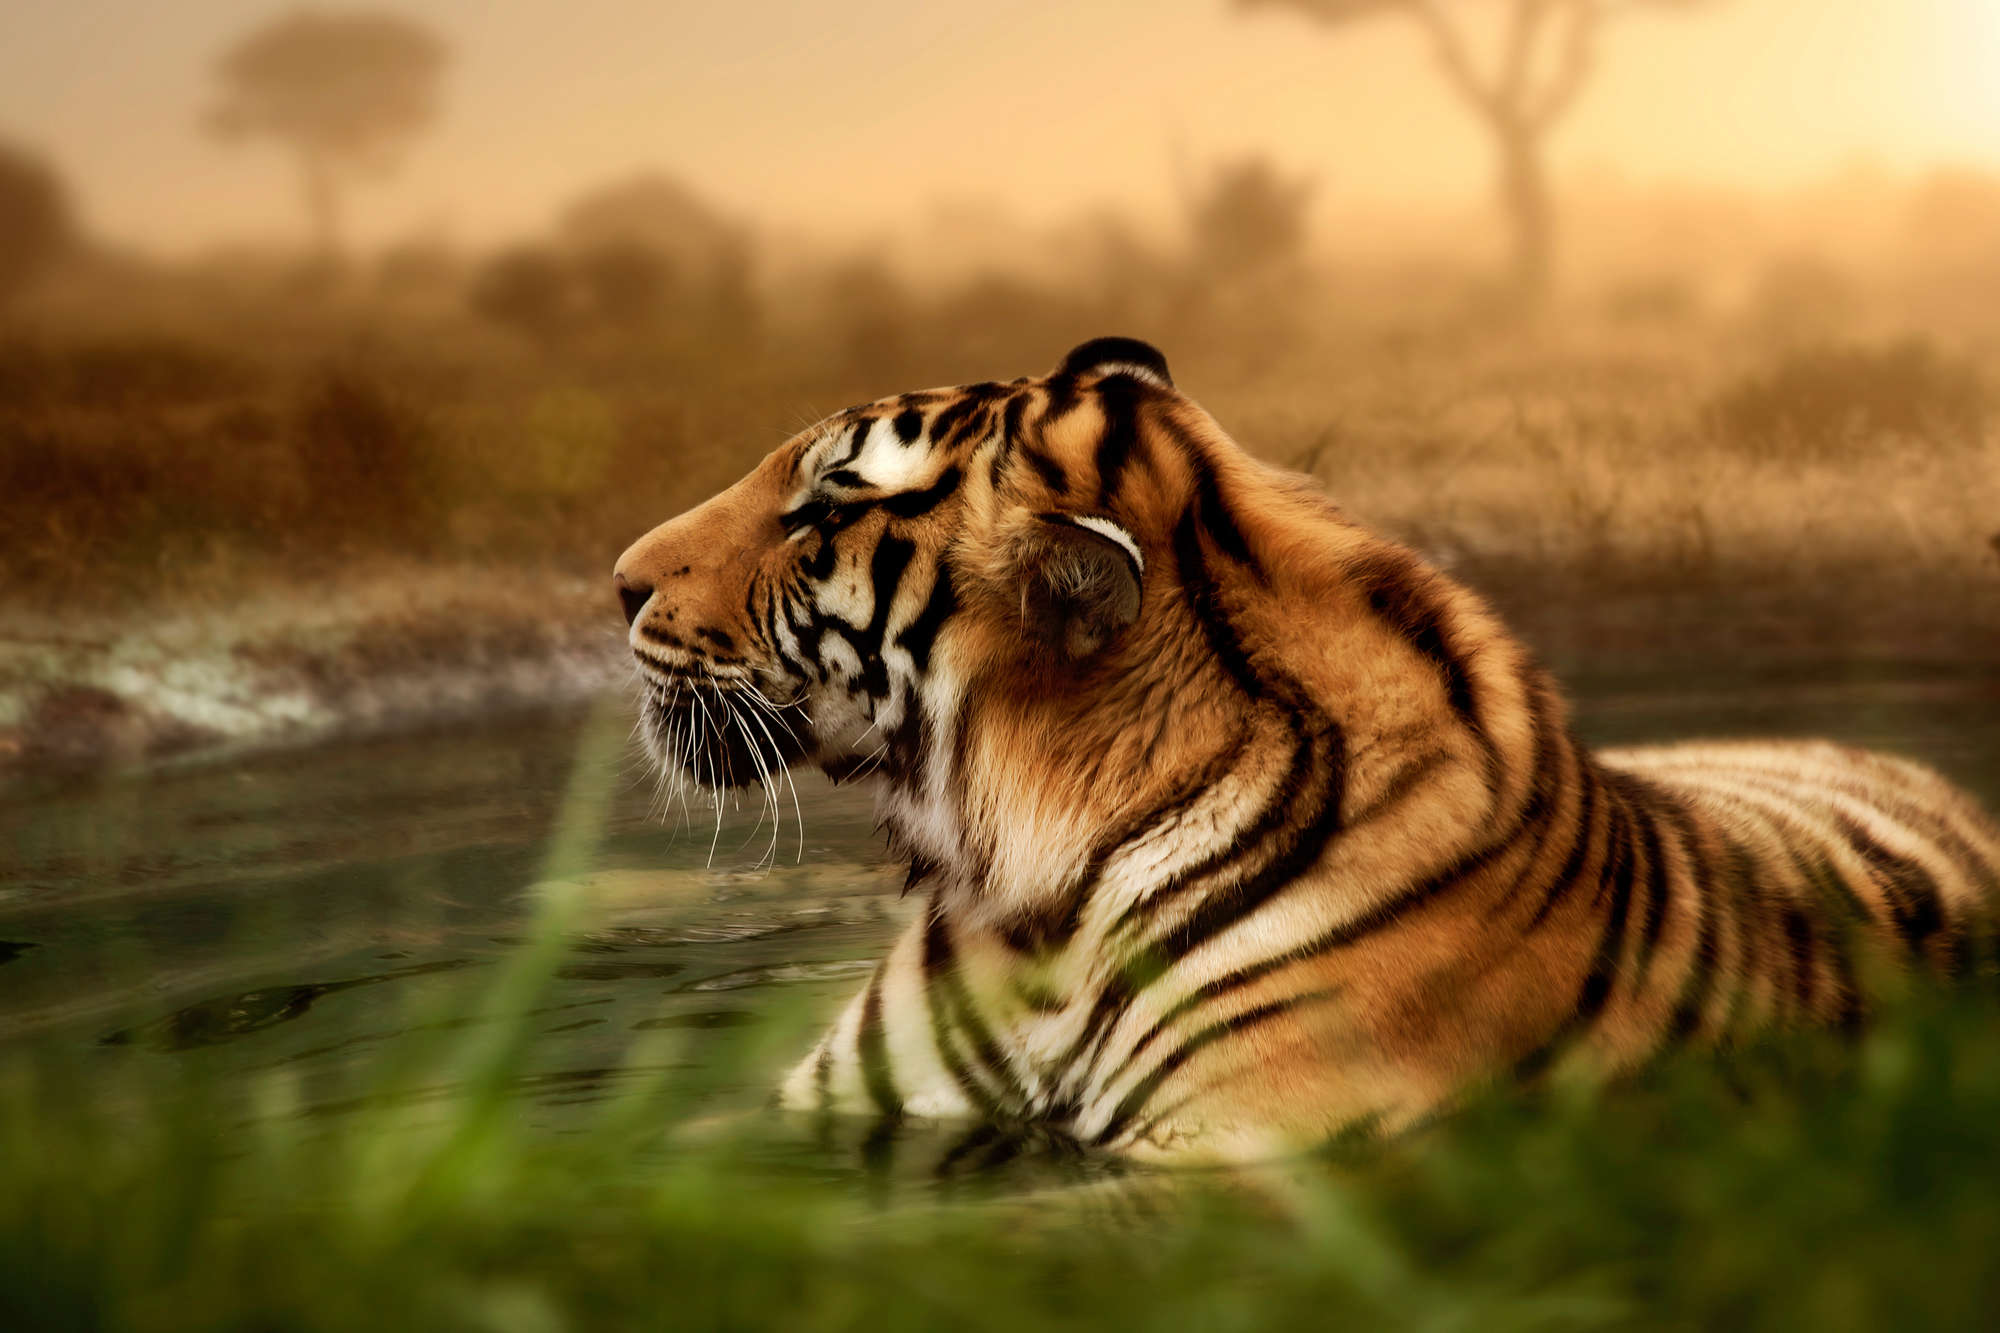             Papel pintado de tigre en la naturaleza sobre vellón liso mate
        